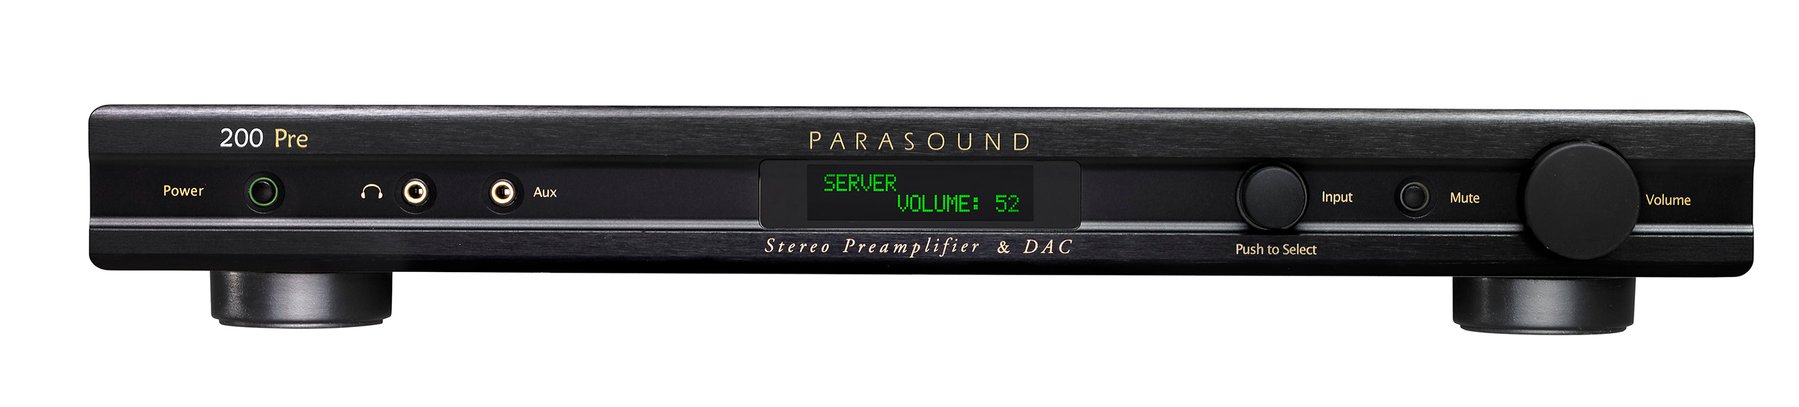 Предварительный усилитель Parasound NewClassic 200 PRE